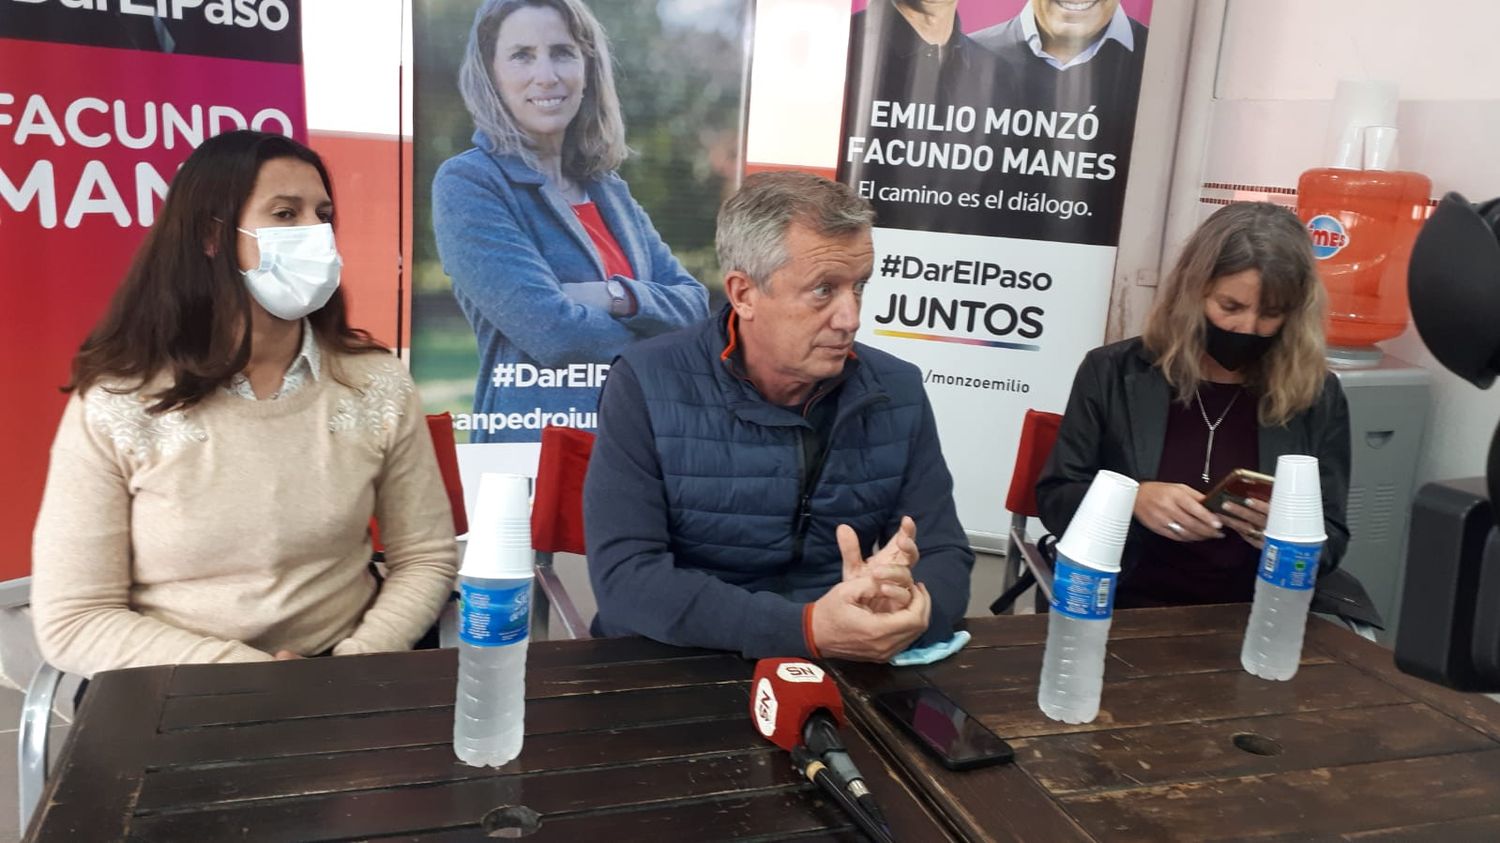 El candidato a diputado Emilio Monzó visitó el local partidario de Paola Basso